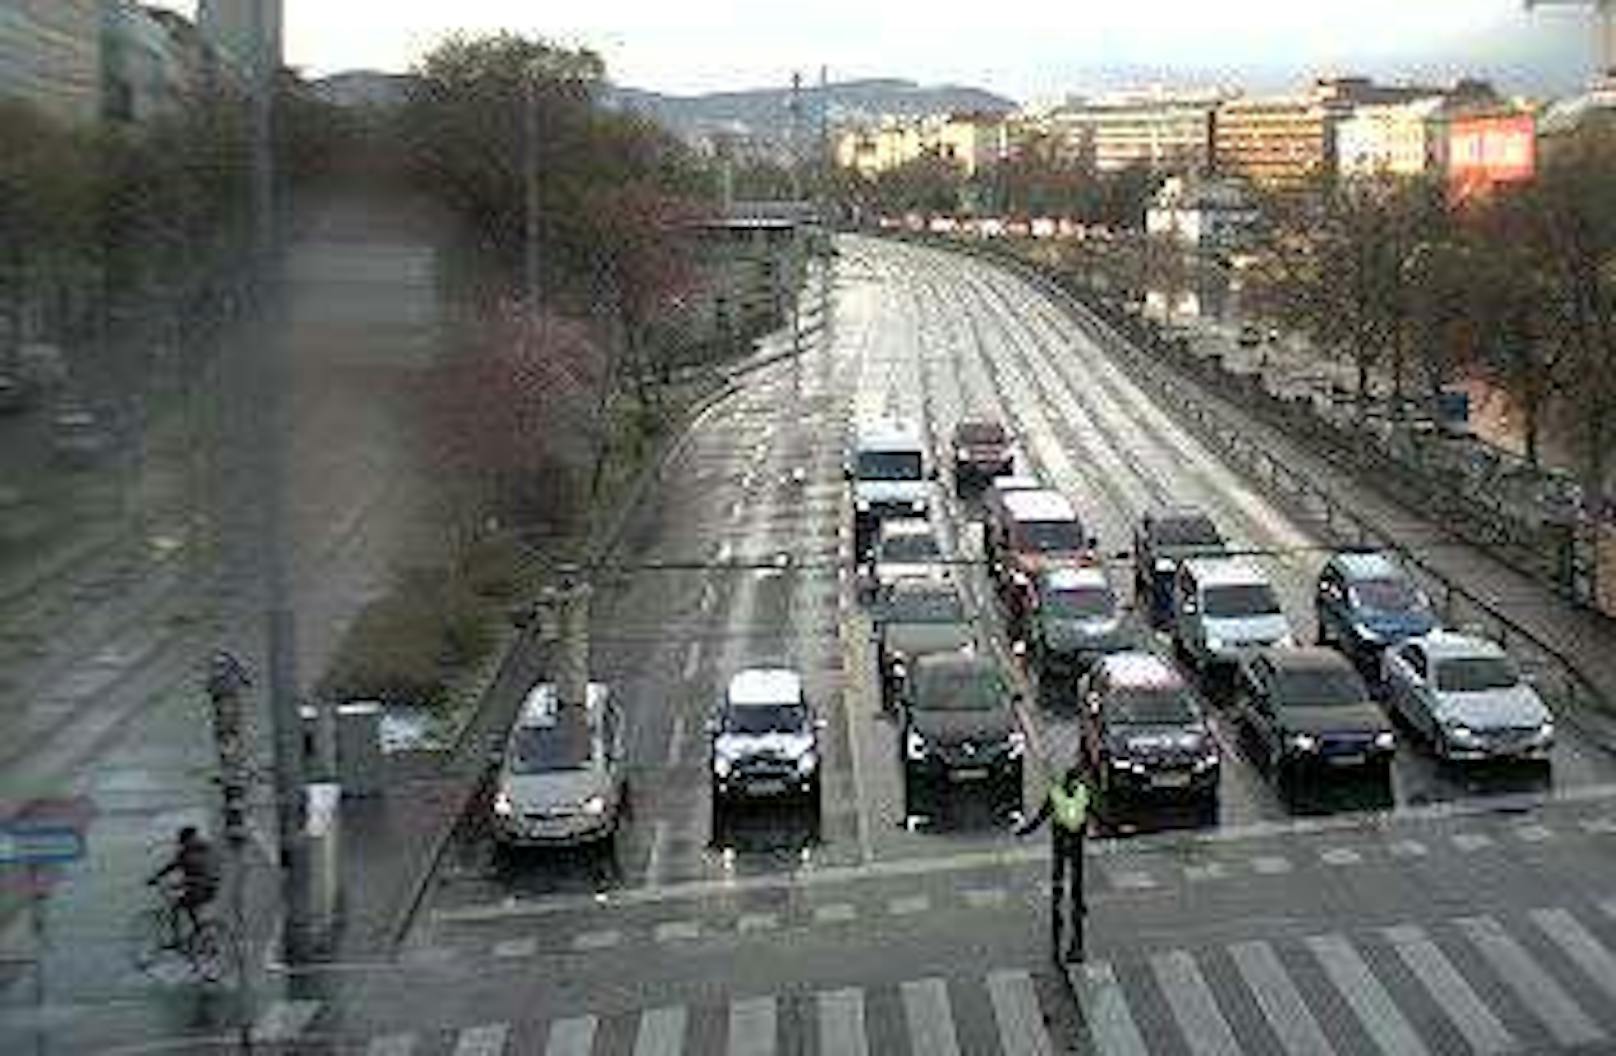 Durch einen Blitzschlag fielen zahlreiche Ampel-Anlagen in Wien aus. Im Bild: ein Polizist regelt den Verkehr bei der Salztorbrücke